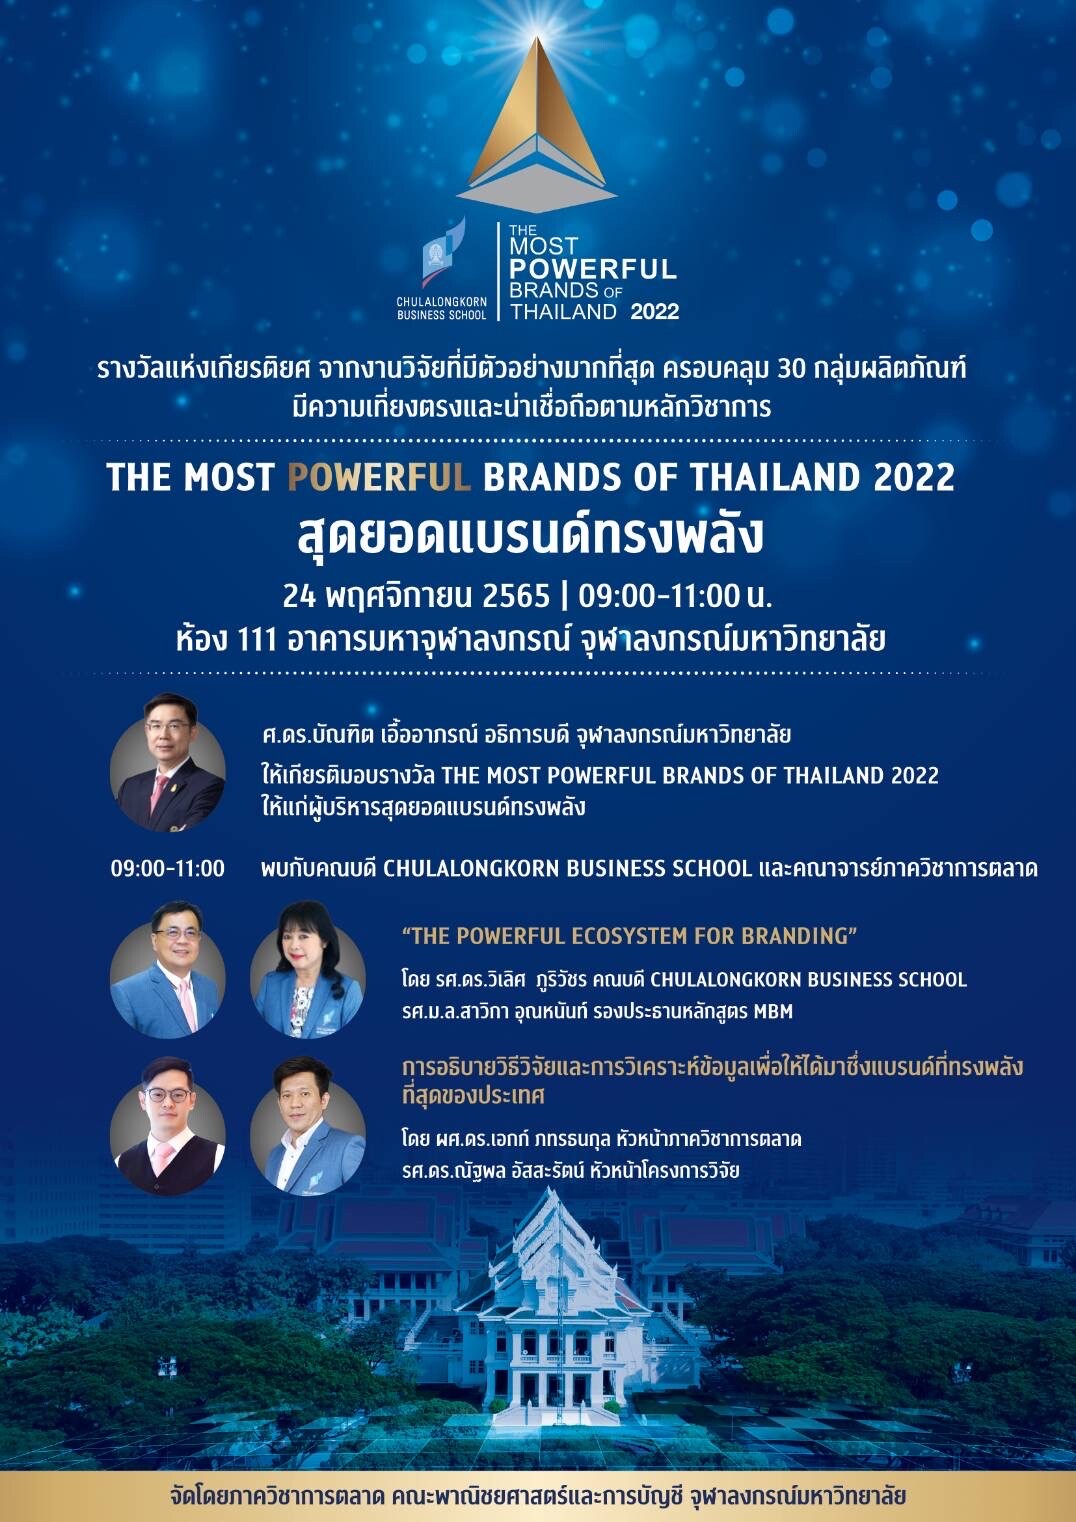 ภาควิชาการตลาด คณะพาณิชยศาสตร์และการบัญชี จุฬาลงกรณ์มหาวิทยาลัย เตรียมจัดงานประกาศผลและมอบรางวัล "สุดยอดแบรนด์ทรงพลัง (The Most Powerful Brands of Thailand)" ประจำปี 2565